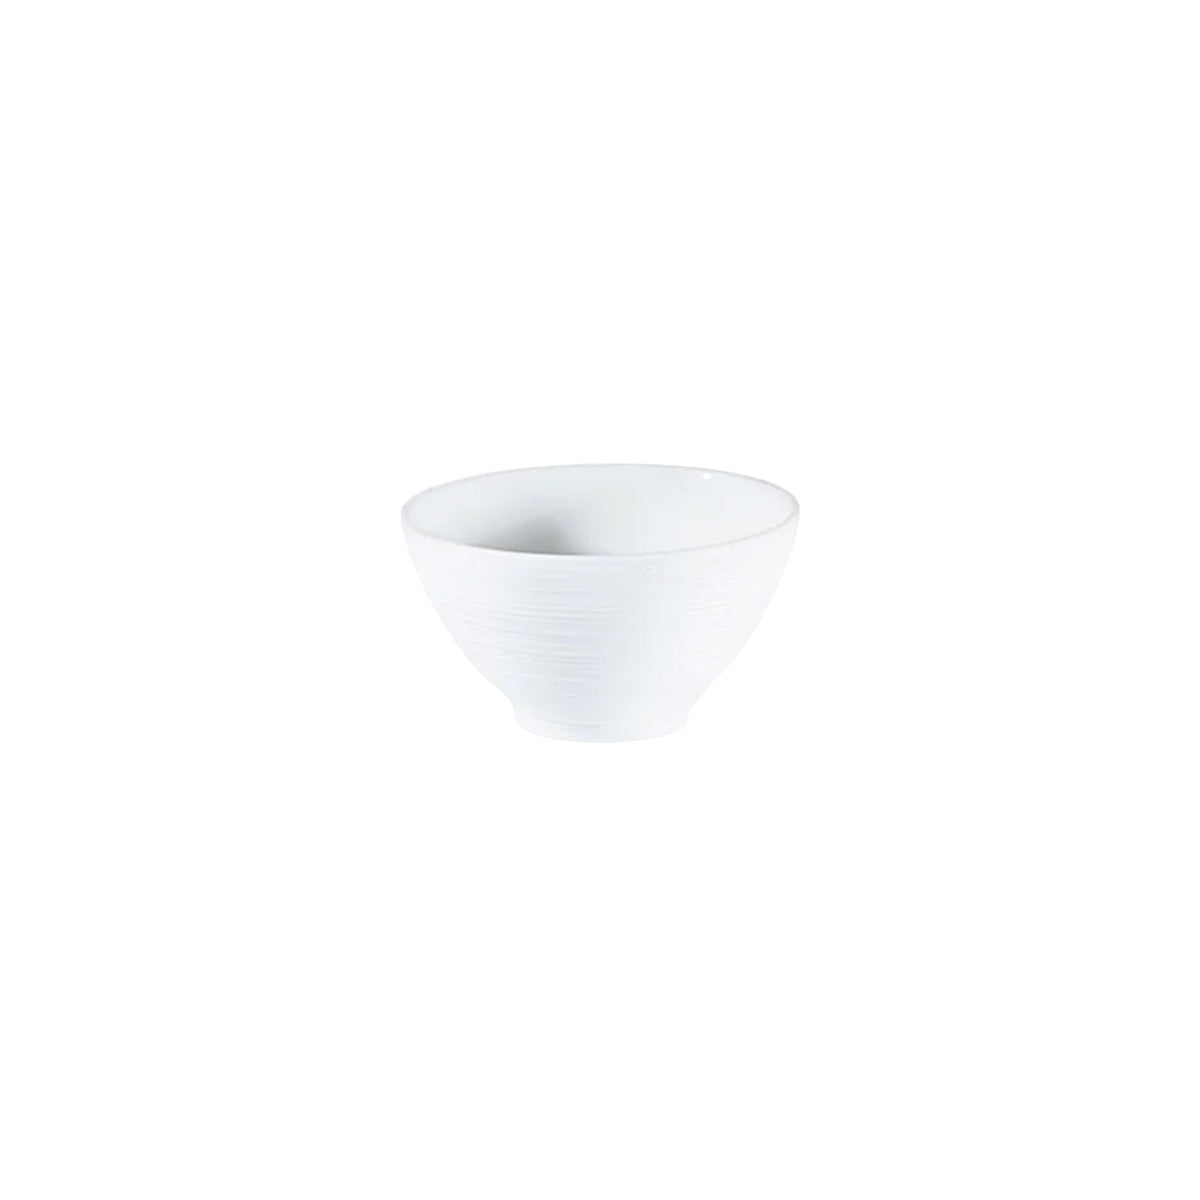 HEMISPHERE White Satin - Sake bowl